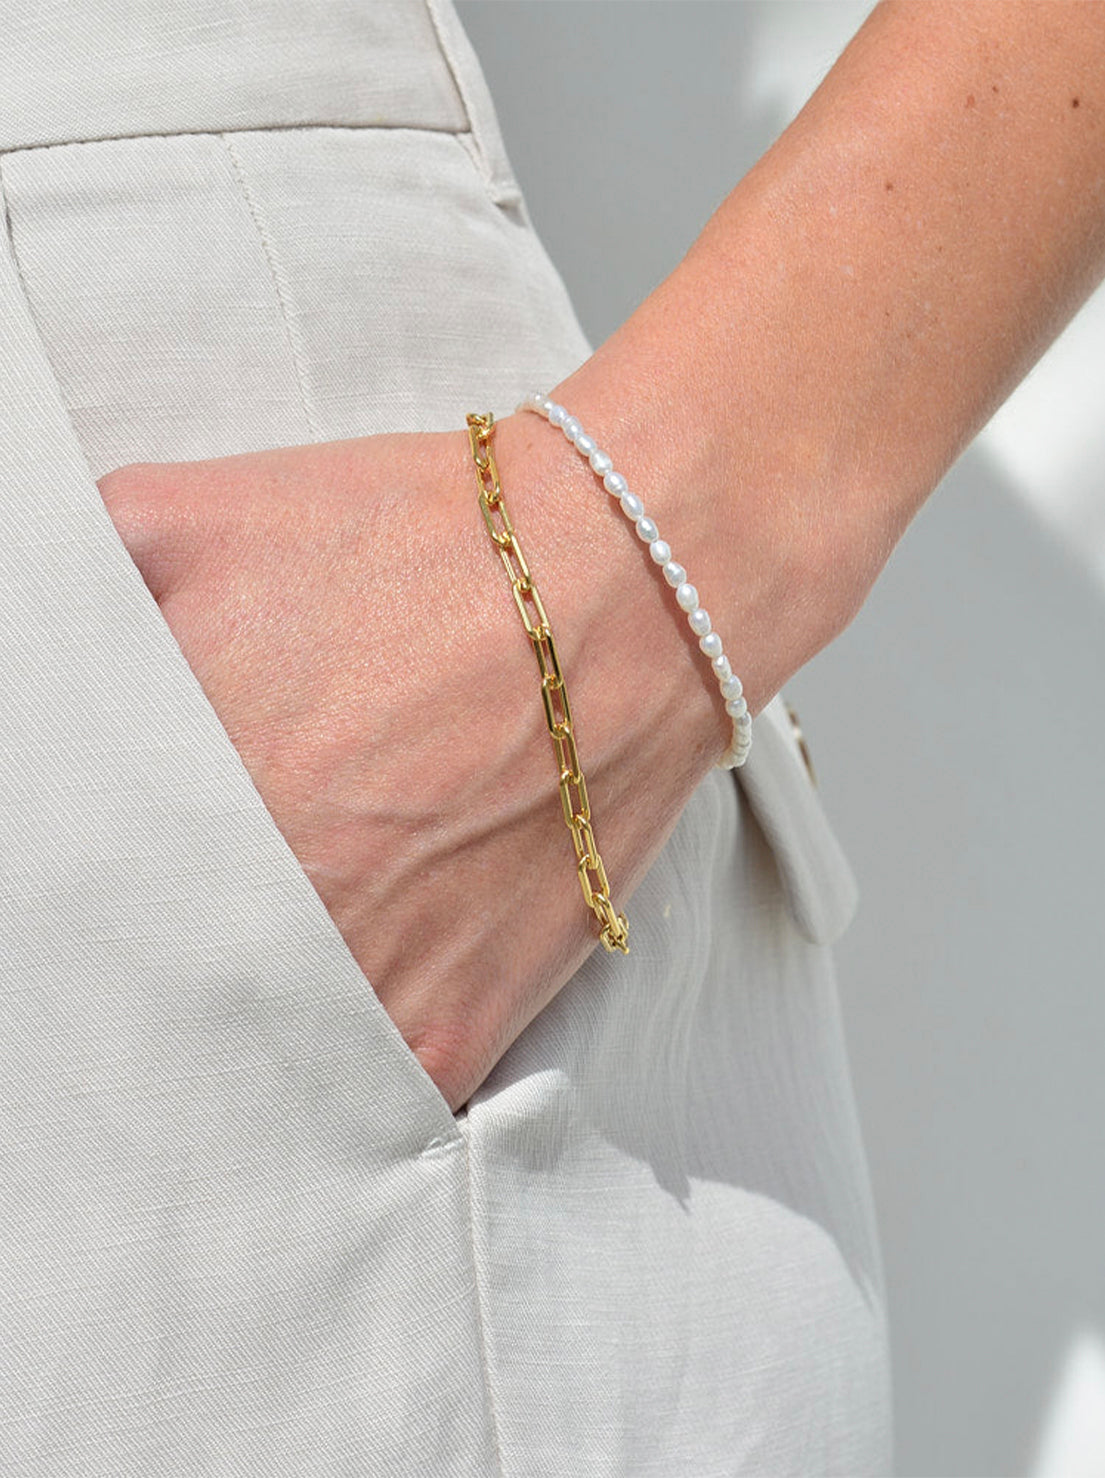 Linda Tahija - Coastal Pearl Bracelet - Gold Plated